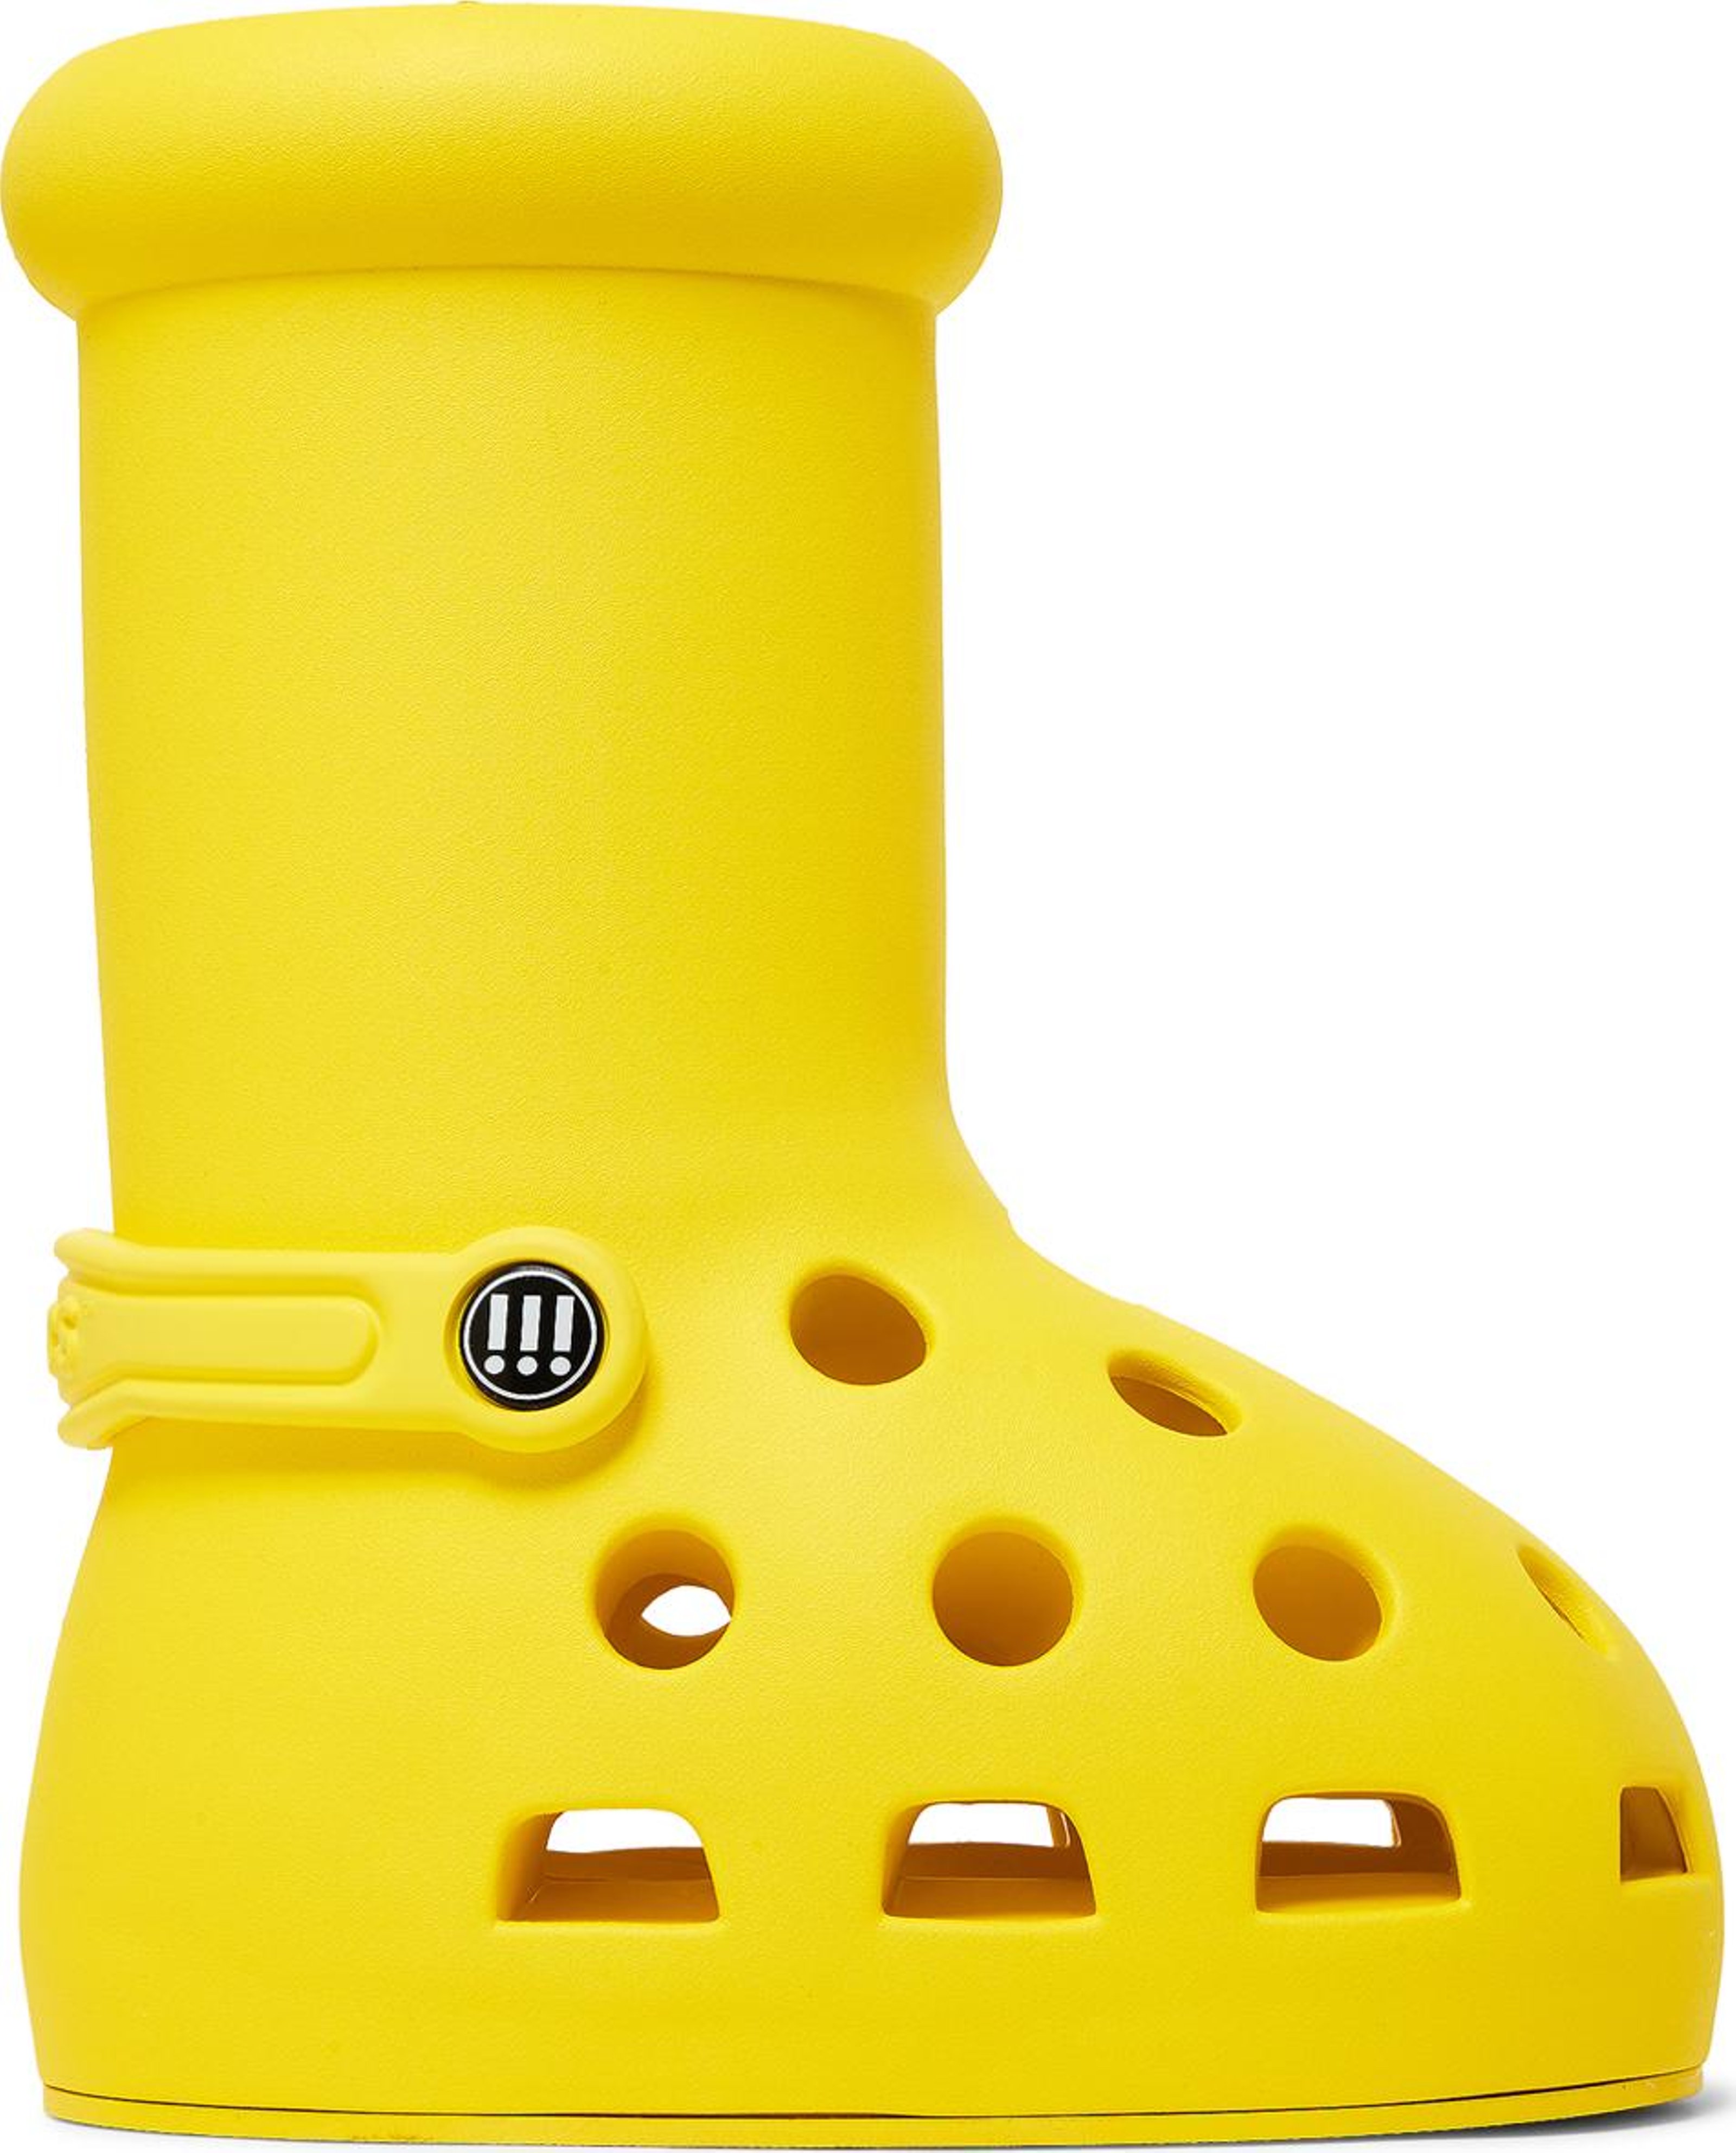 Buy Crocs x MSCHF Big Red Boot 'Yellow' - MSCHF010 Y | GOAT